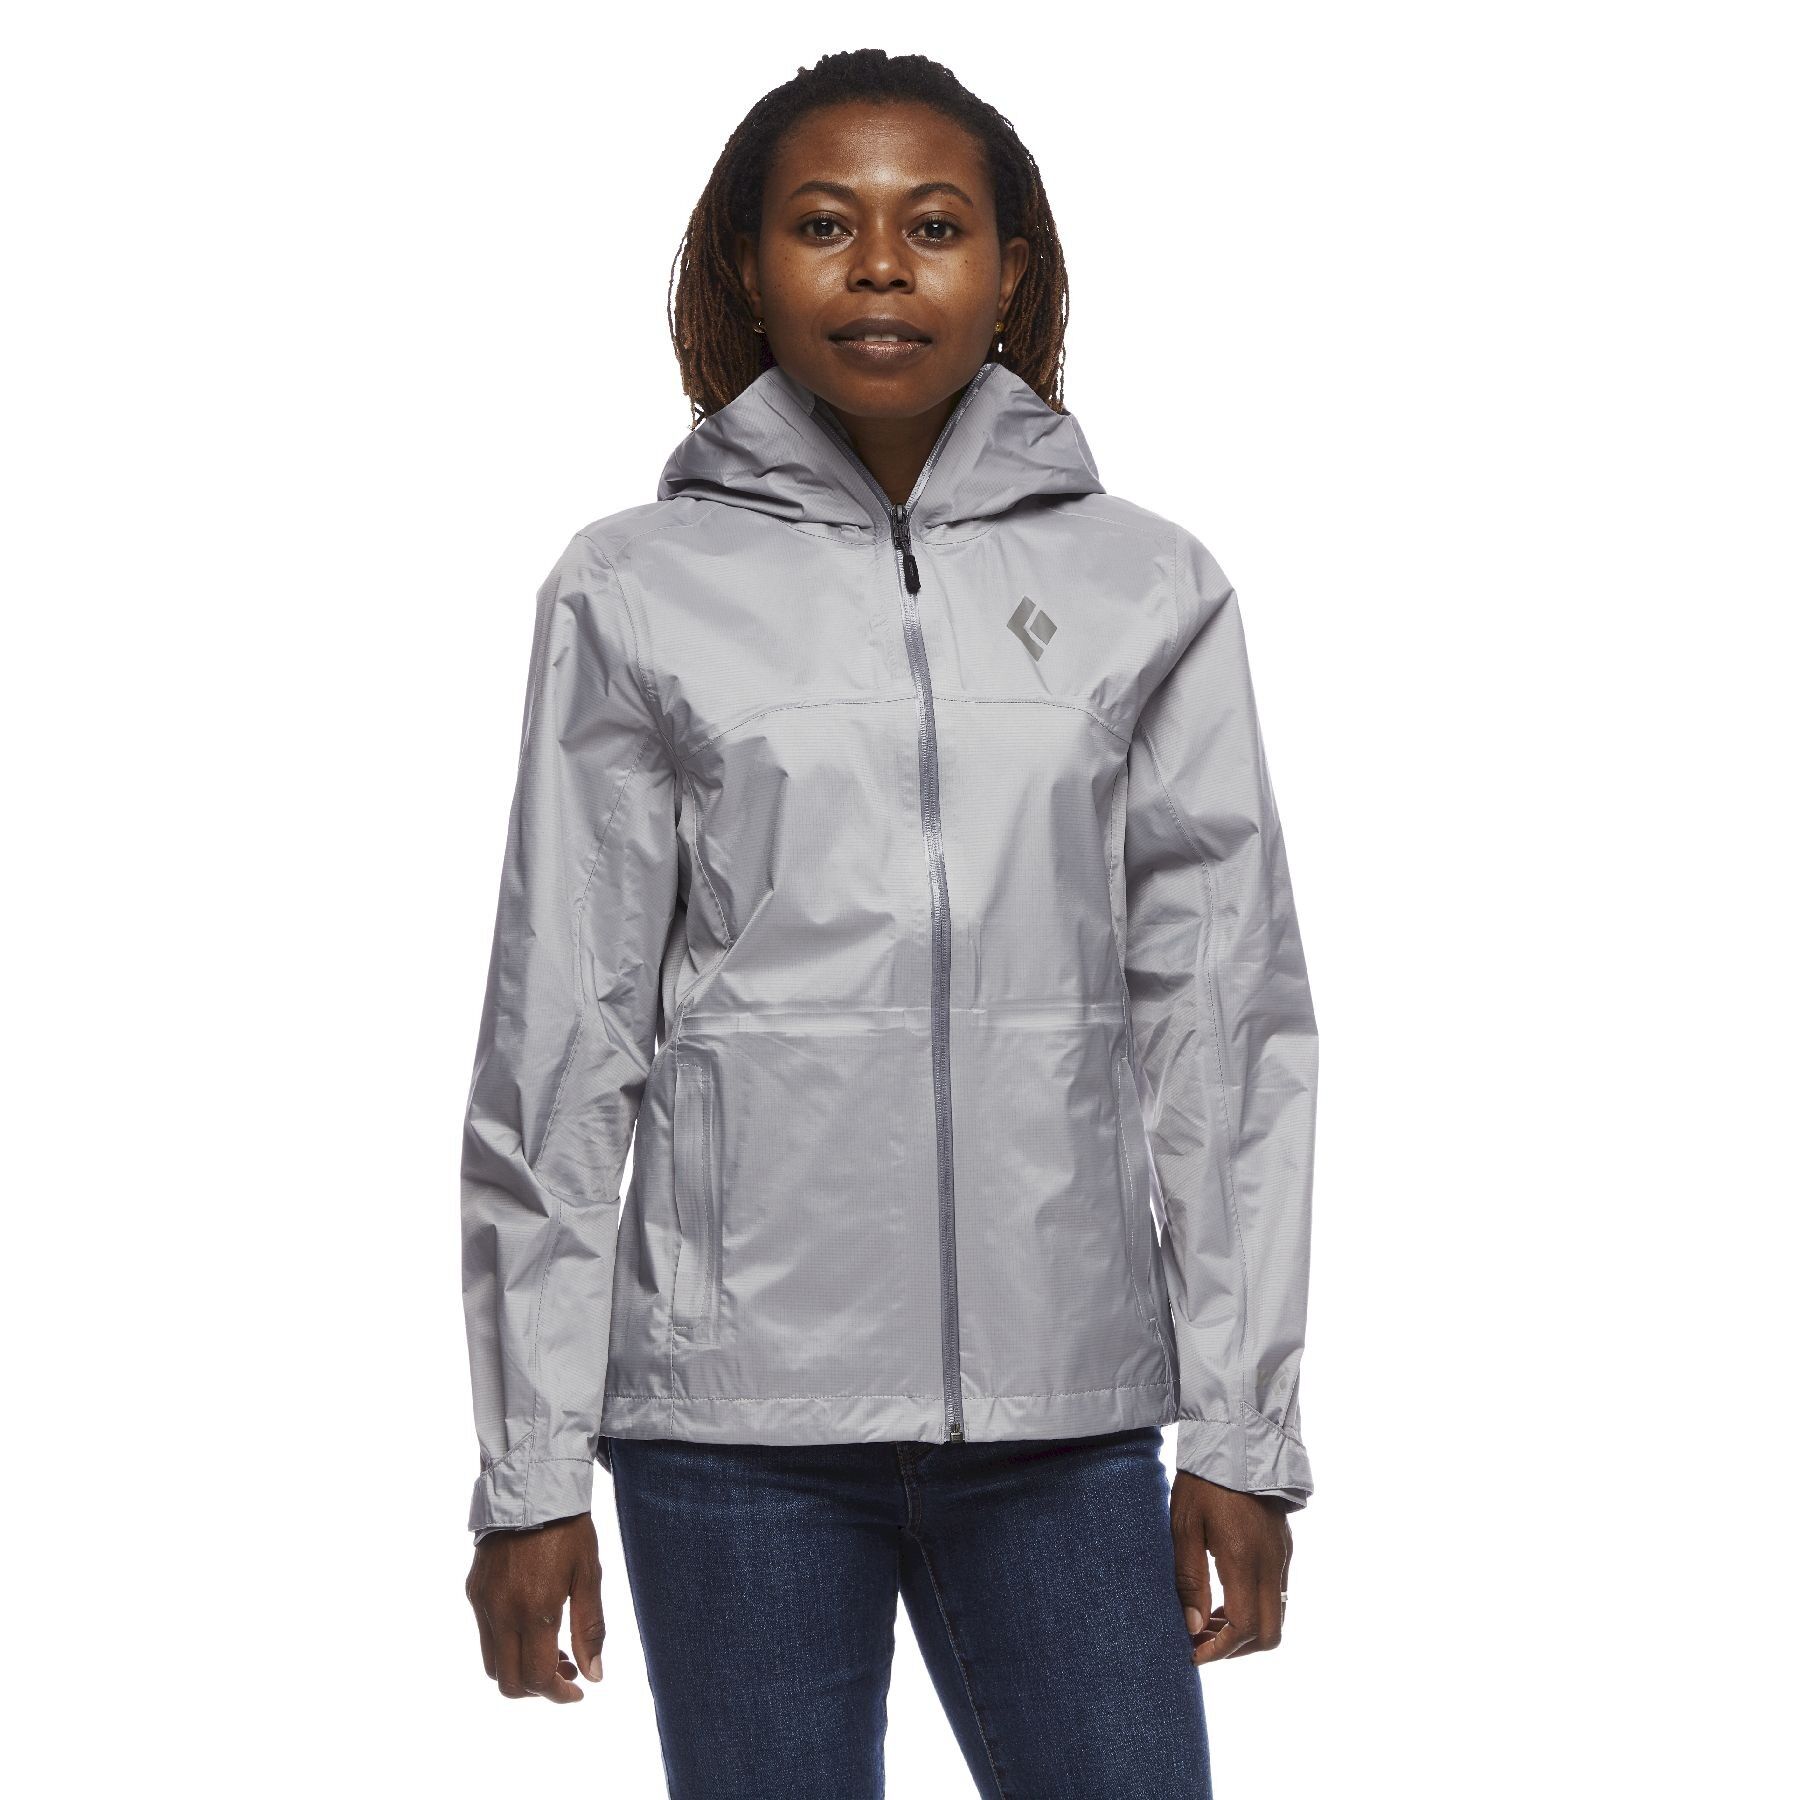 Black Diamond Treeline Rain Shell - Waterproof jacket - Women's